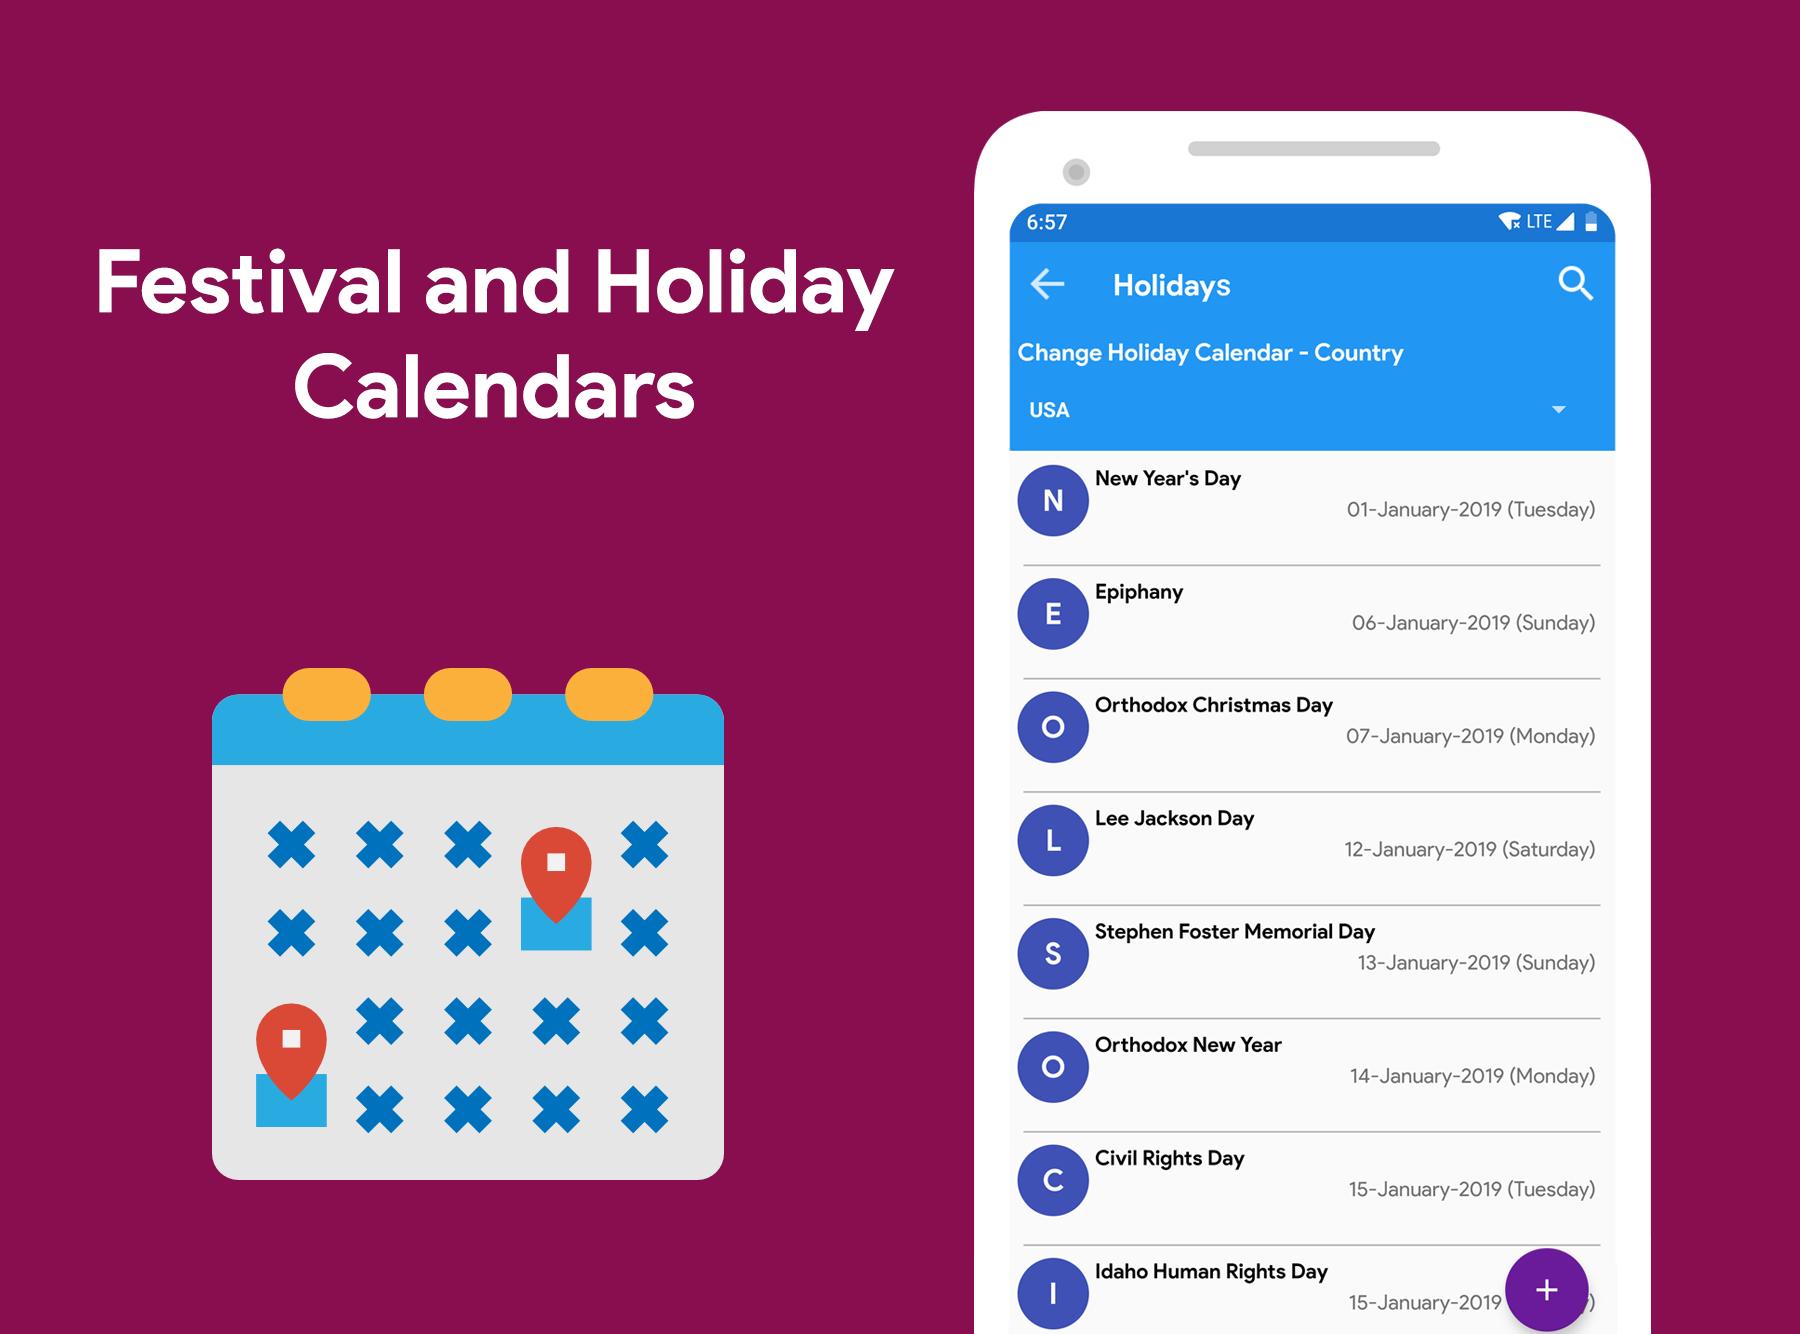 Calendario 2020 Diario Eventos Vacaciones For Android Apk